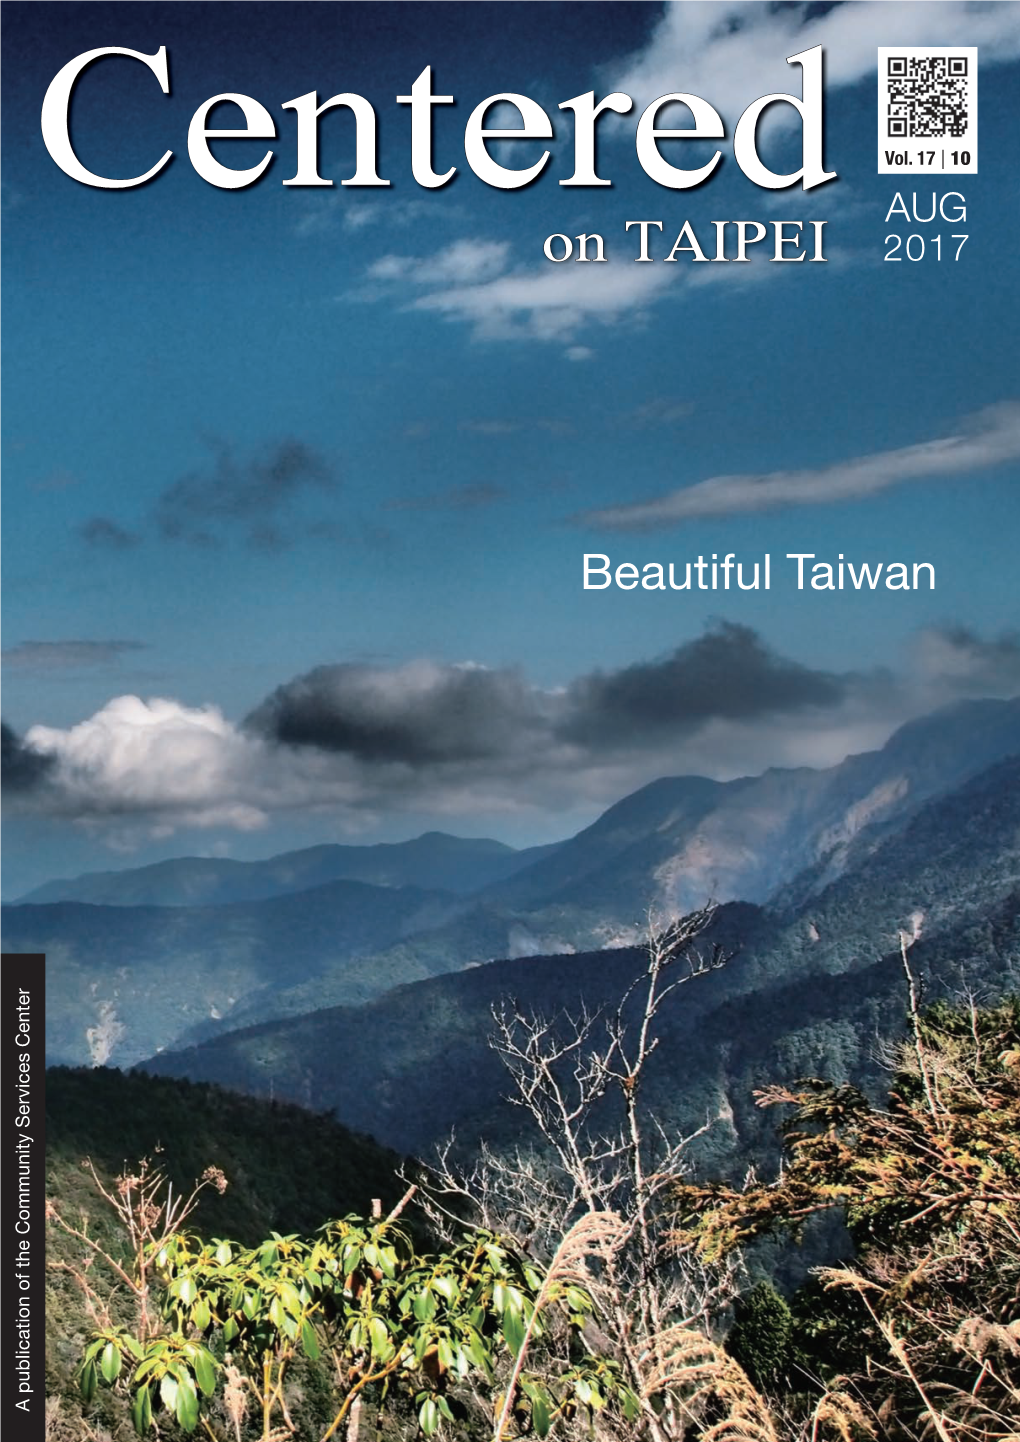 On TAIPEI Beautiful Taiwan 2017 Vol